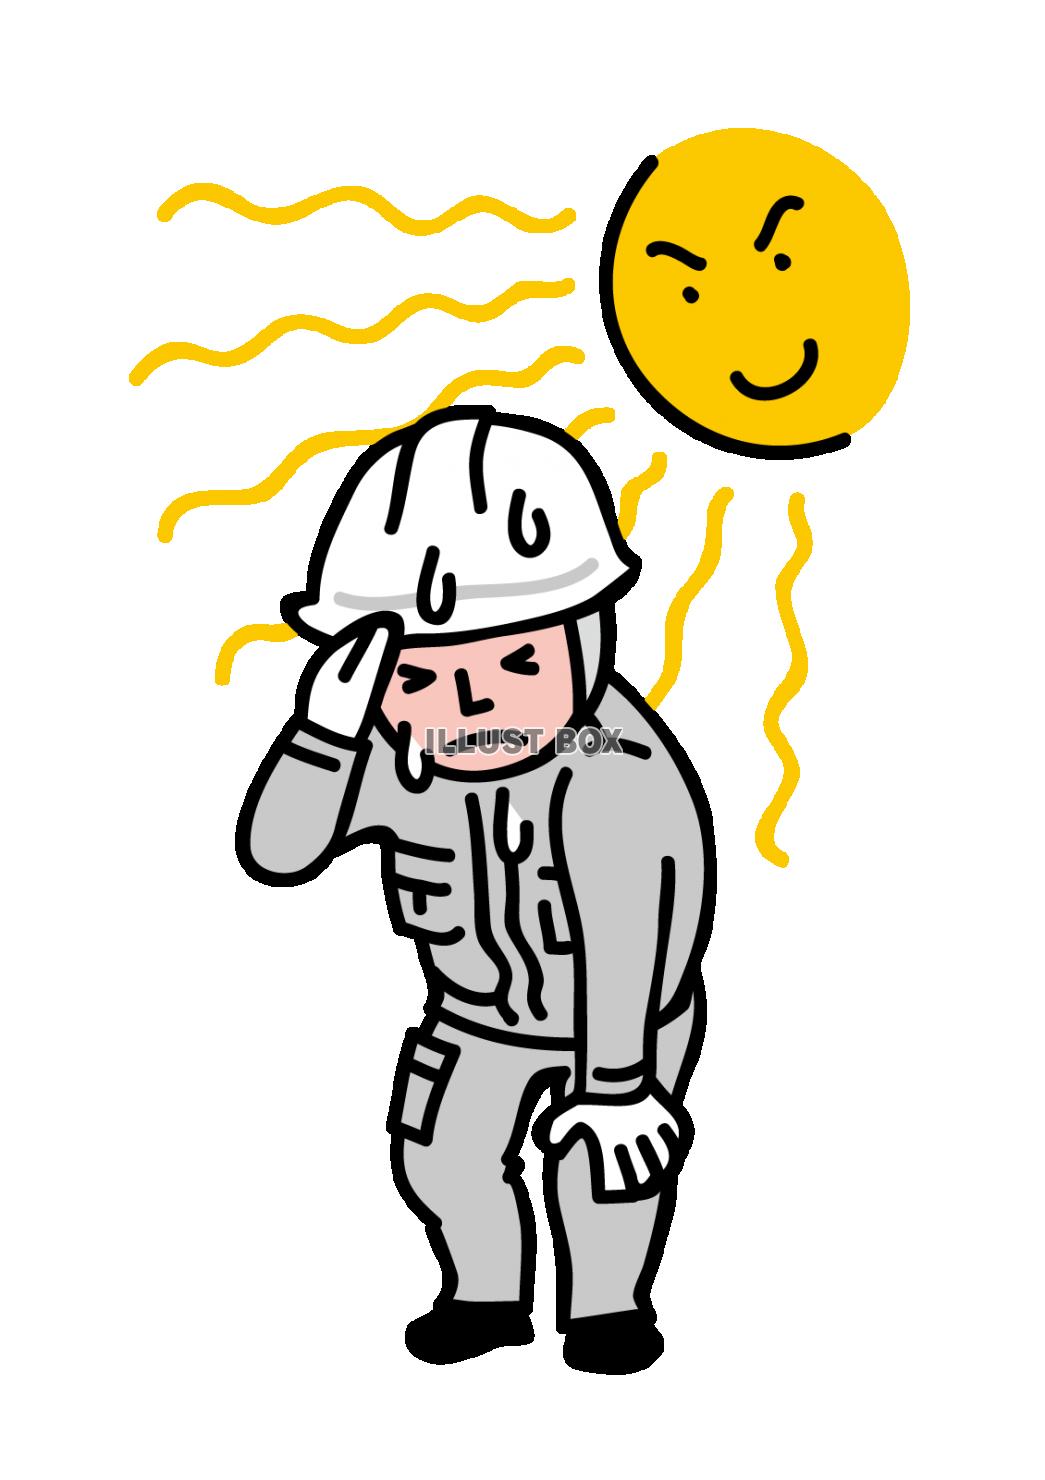 炎天下作業員仕事中熱中症注意猛暑厚着ヘルメットめまい体調不良...